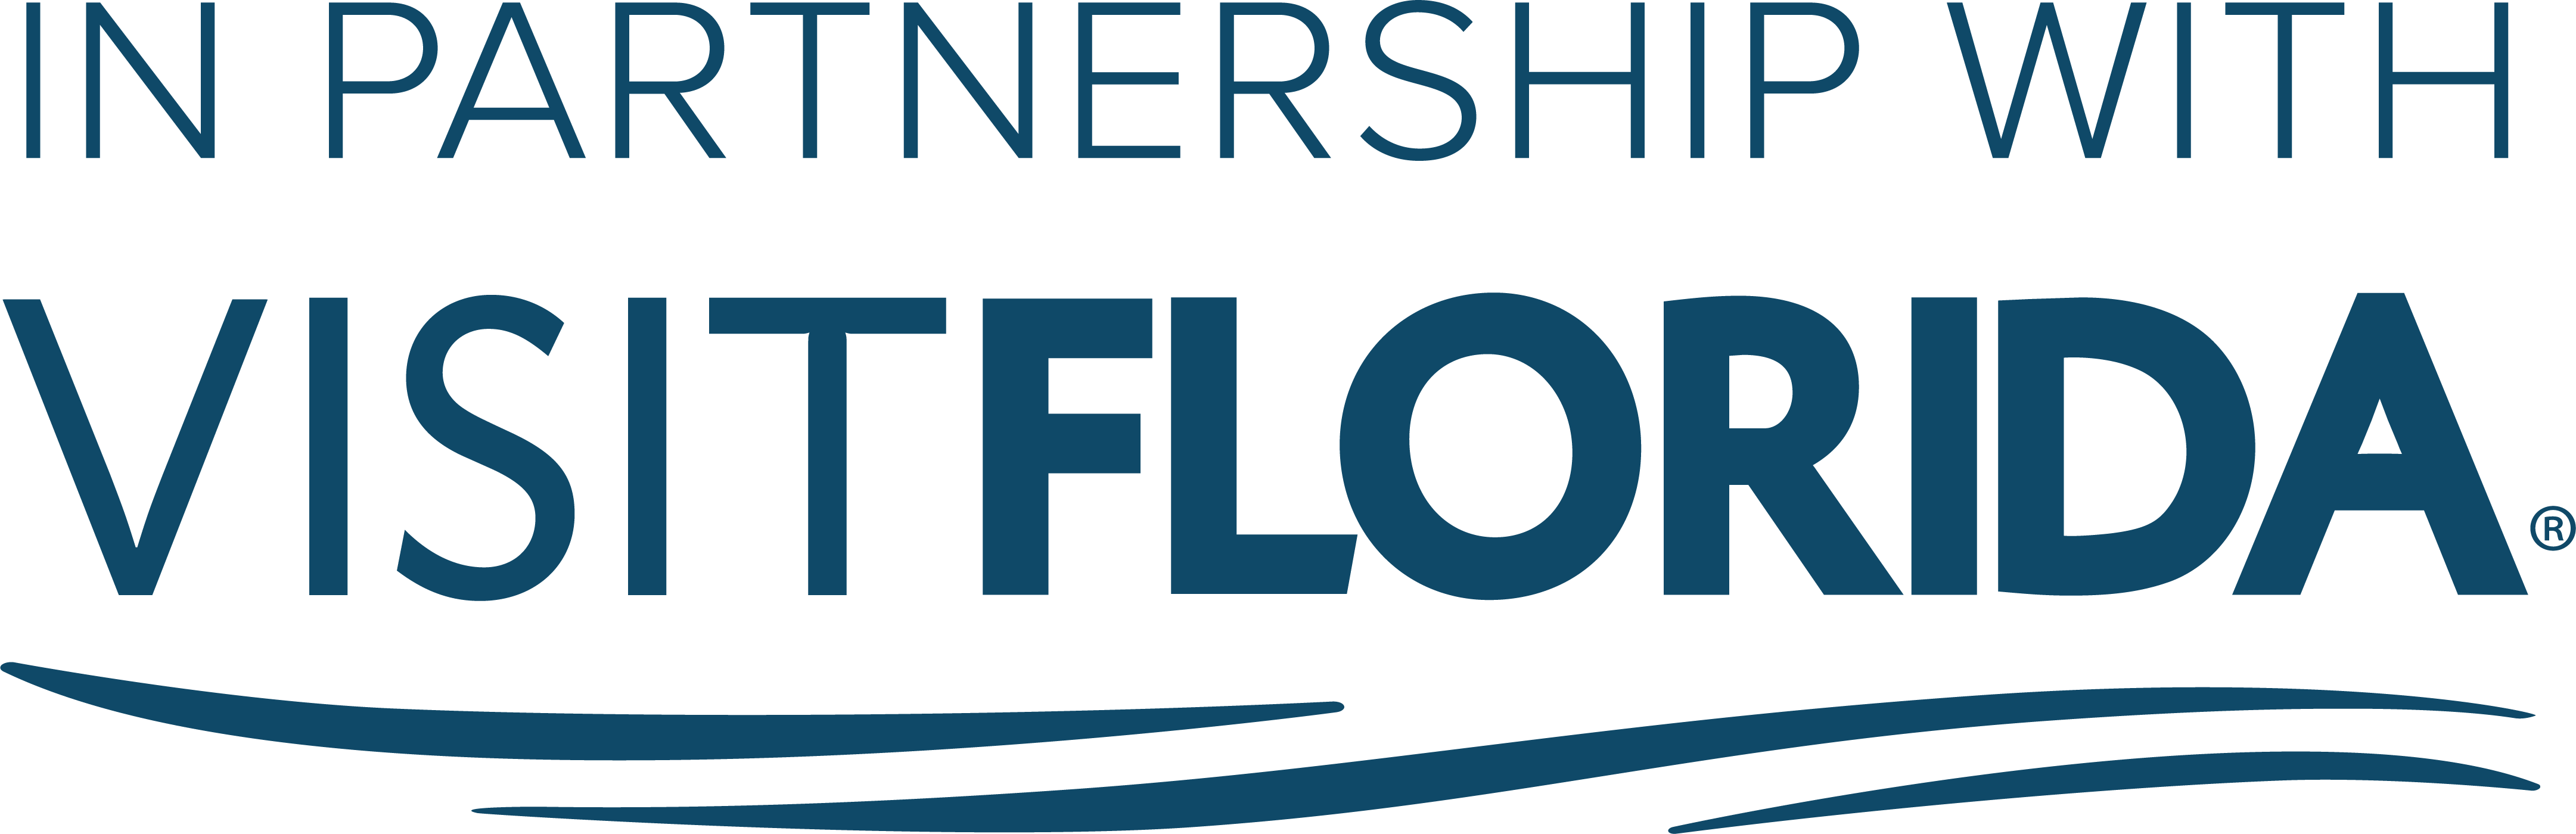 Visit Florida.com logo